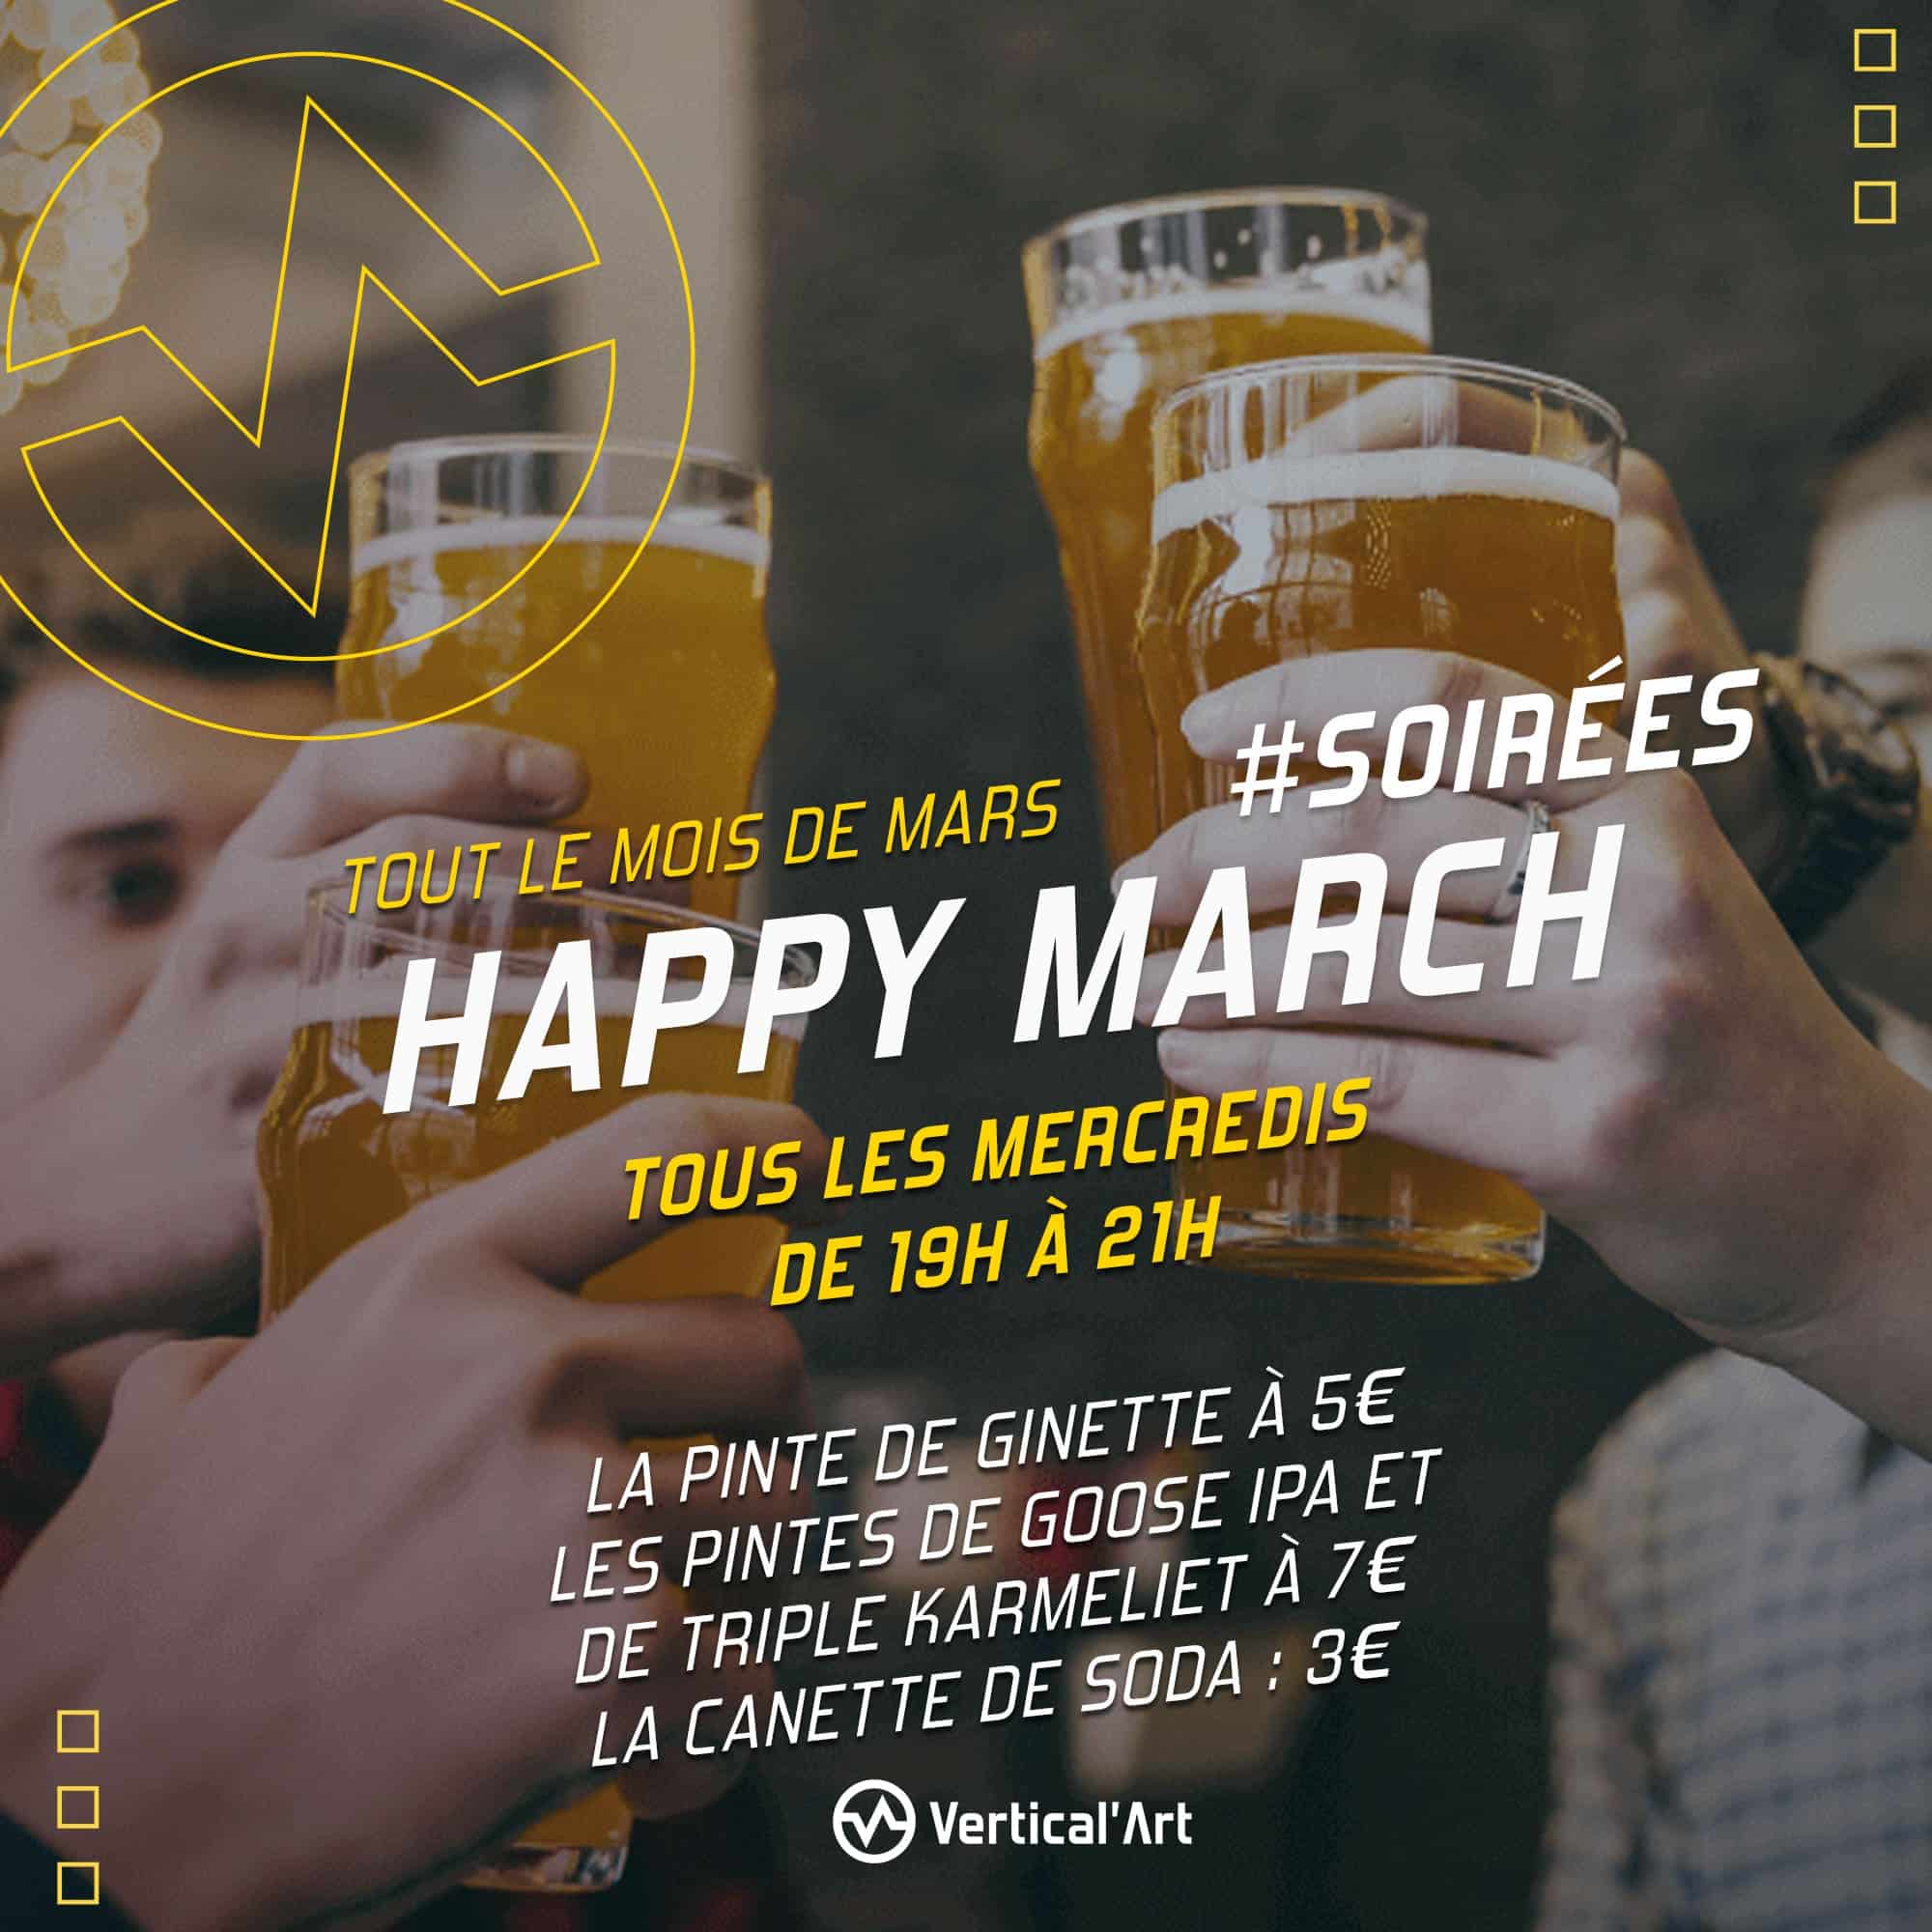 Happy March : La pinte de bière à 5€ tous les mercredis de mars à Vertical'Art Rungis !